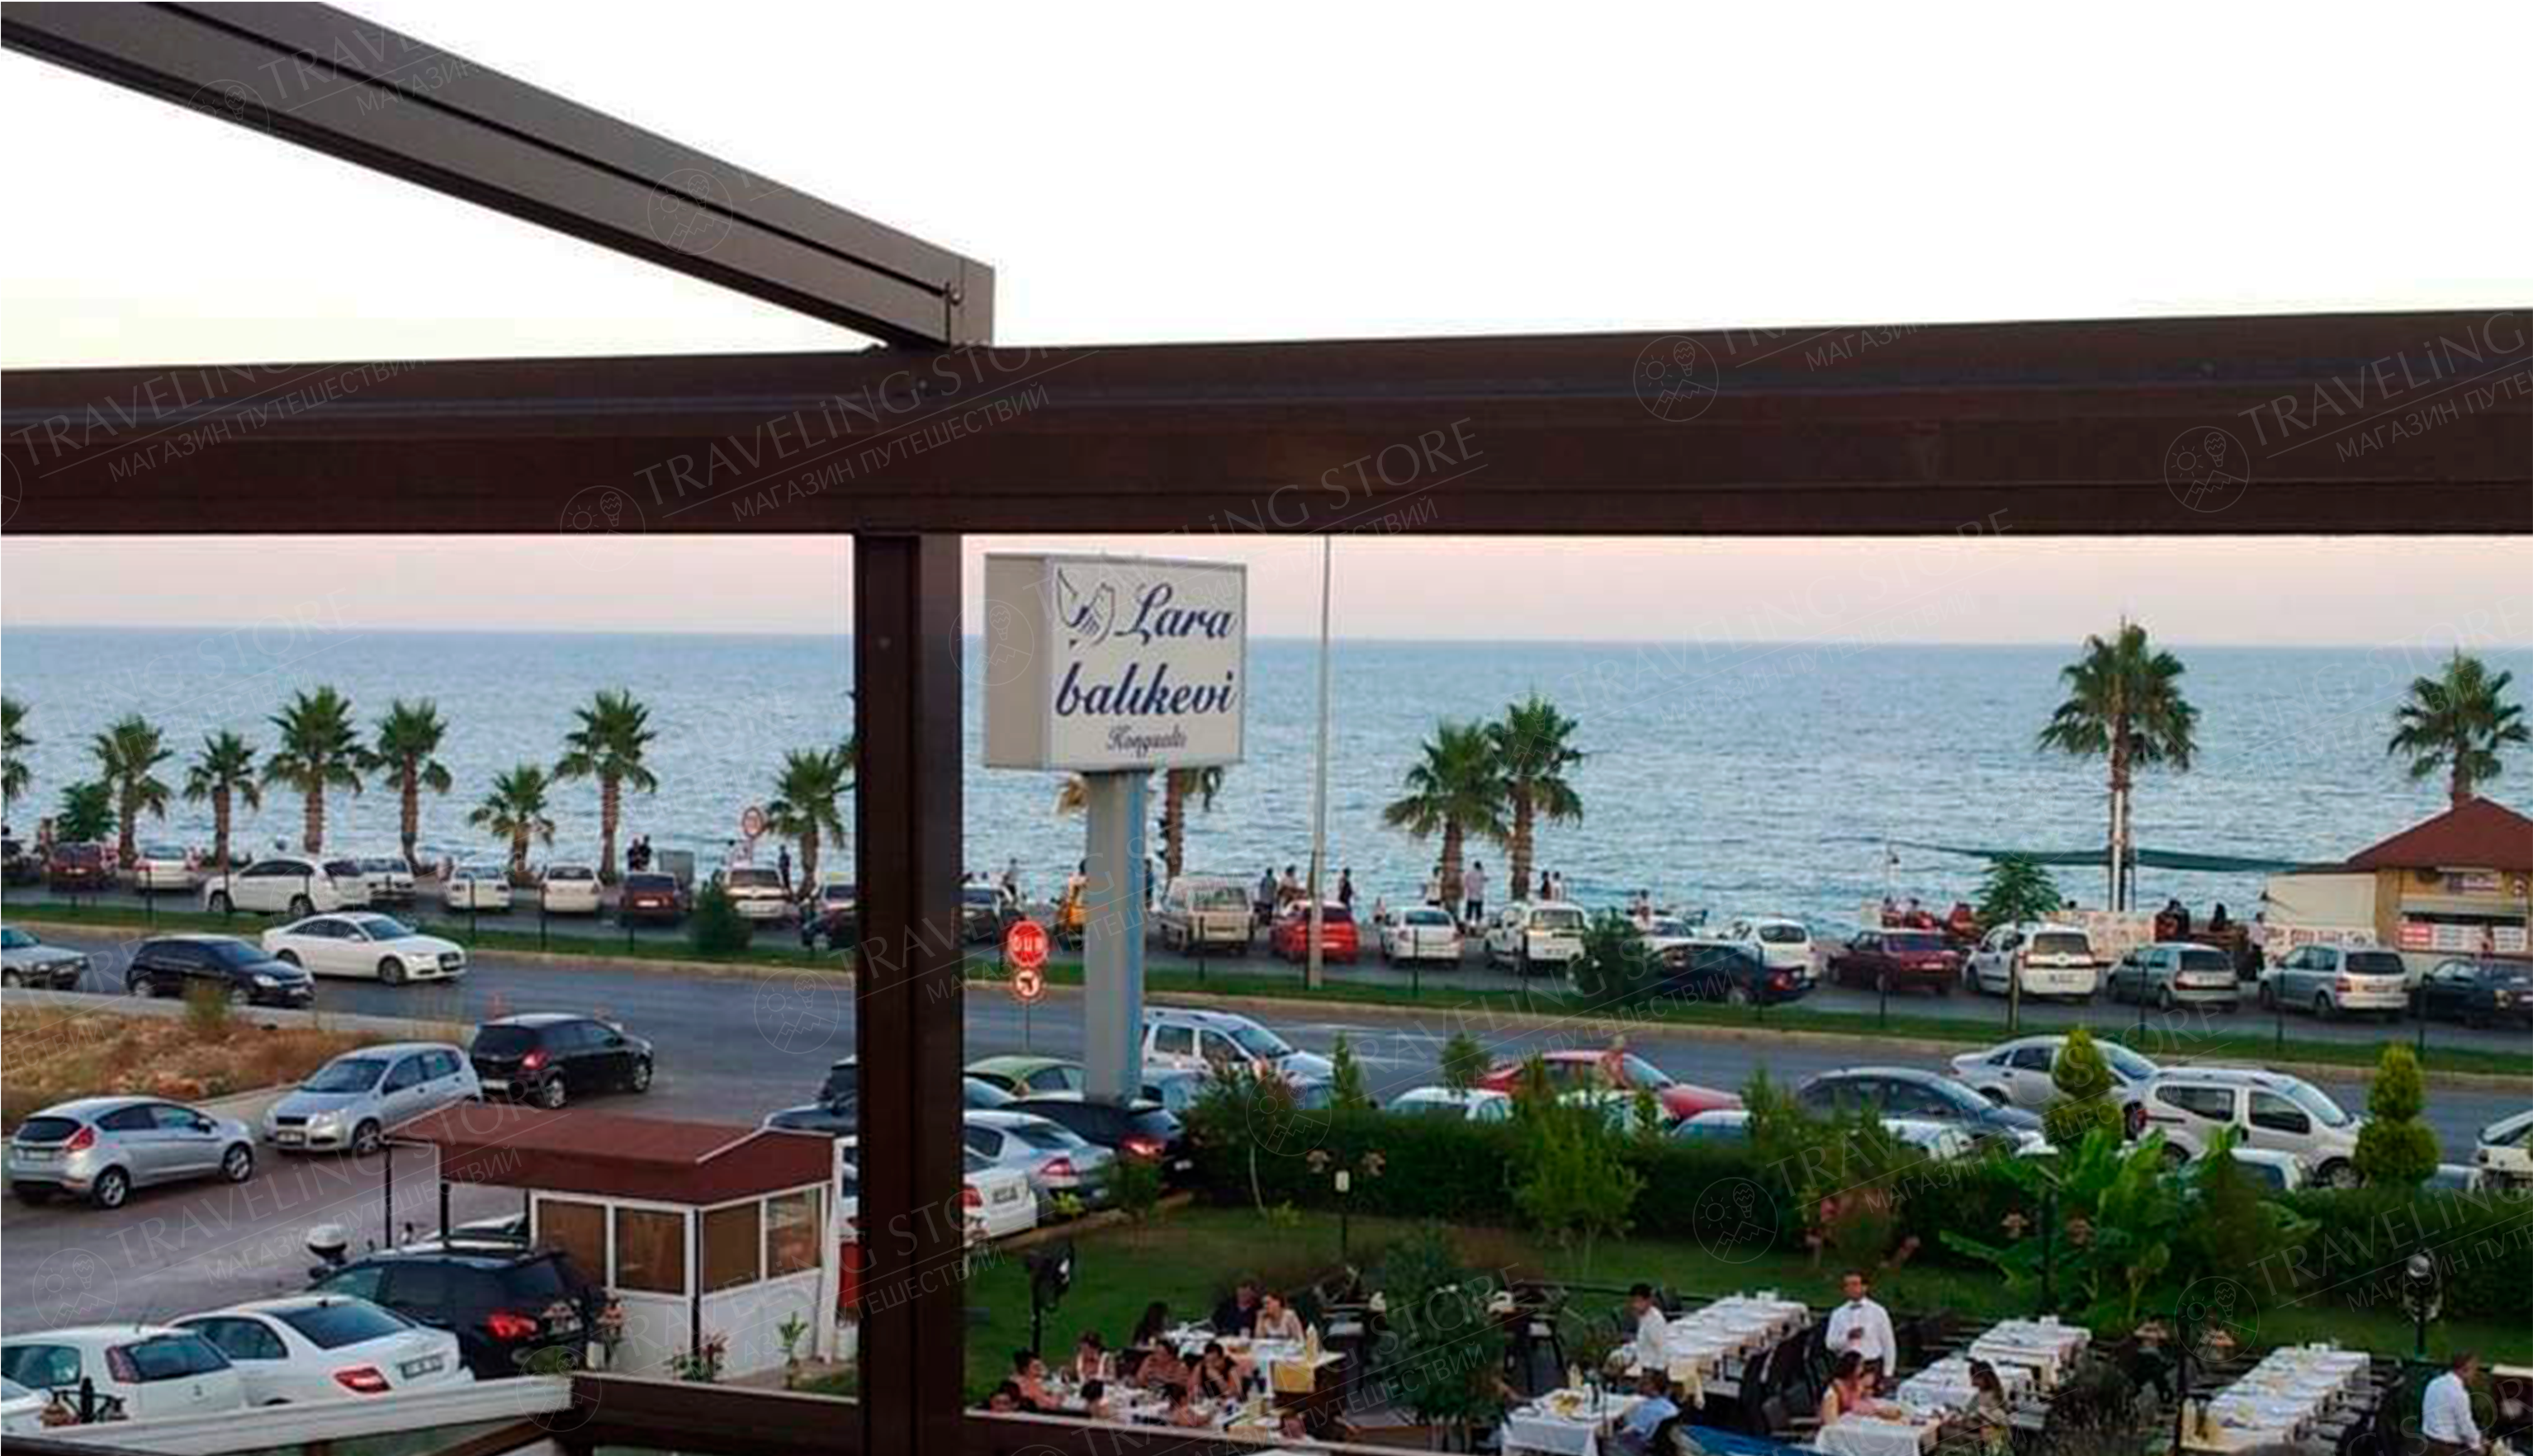 Restaurant Antalya Balık evi from Antalya